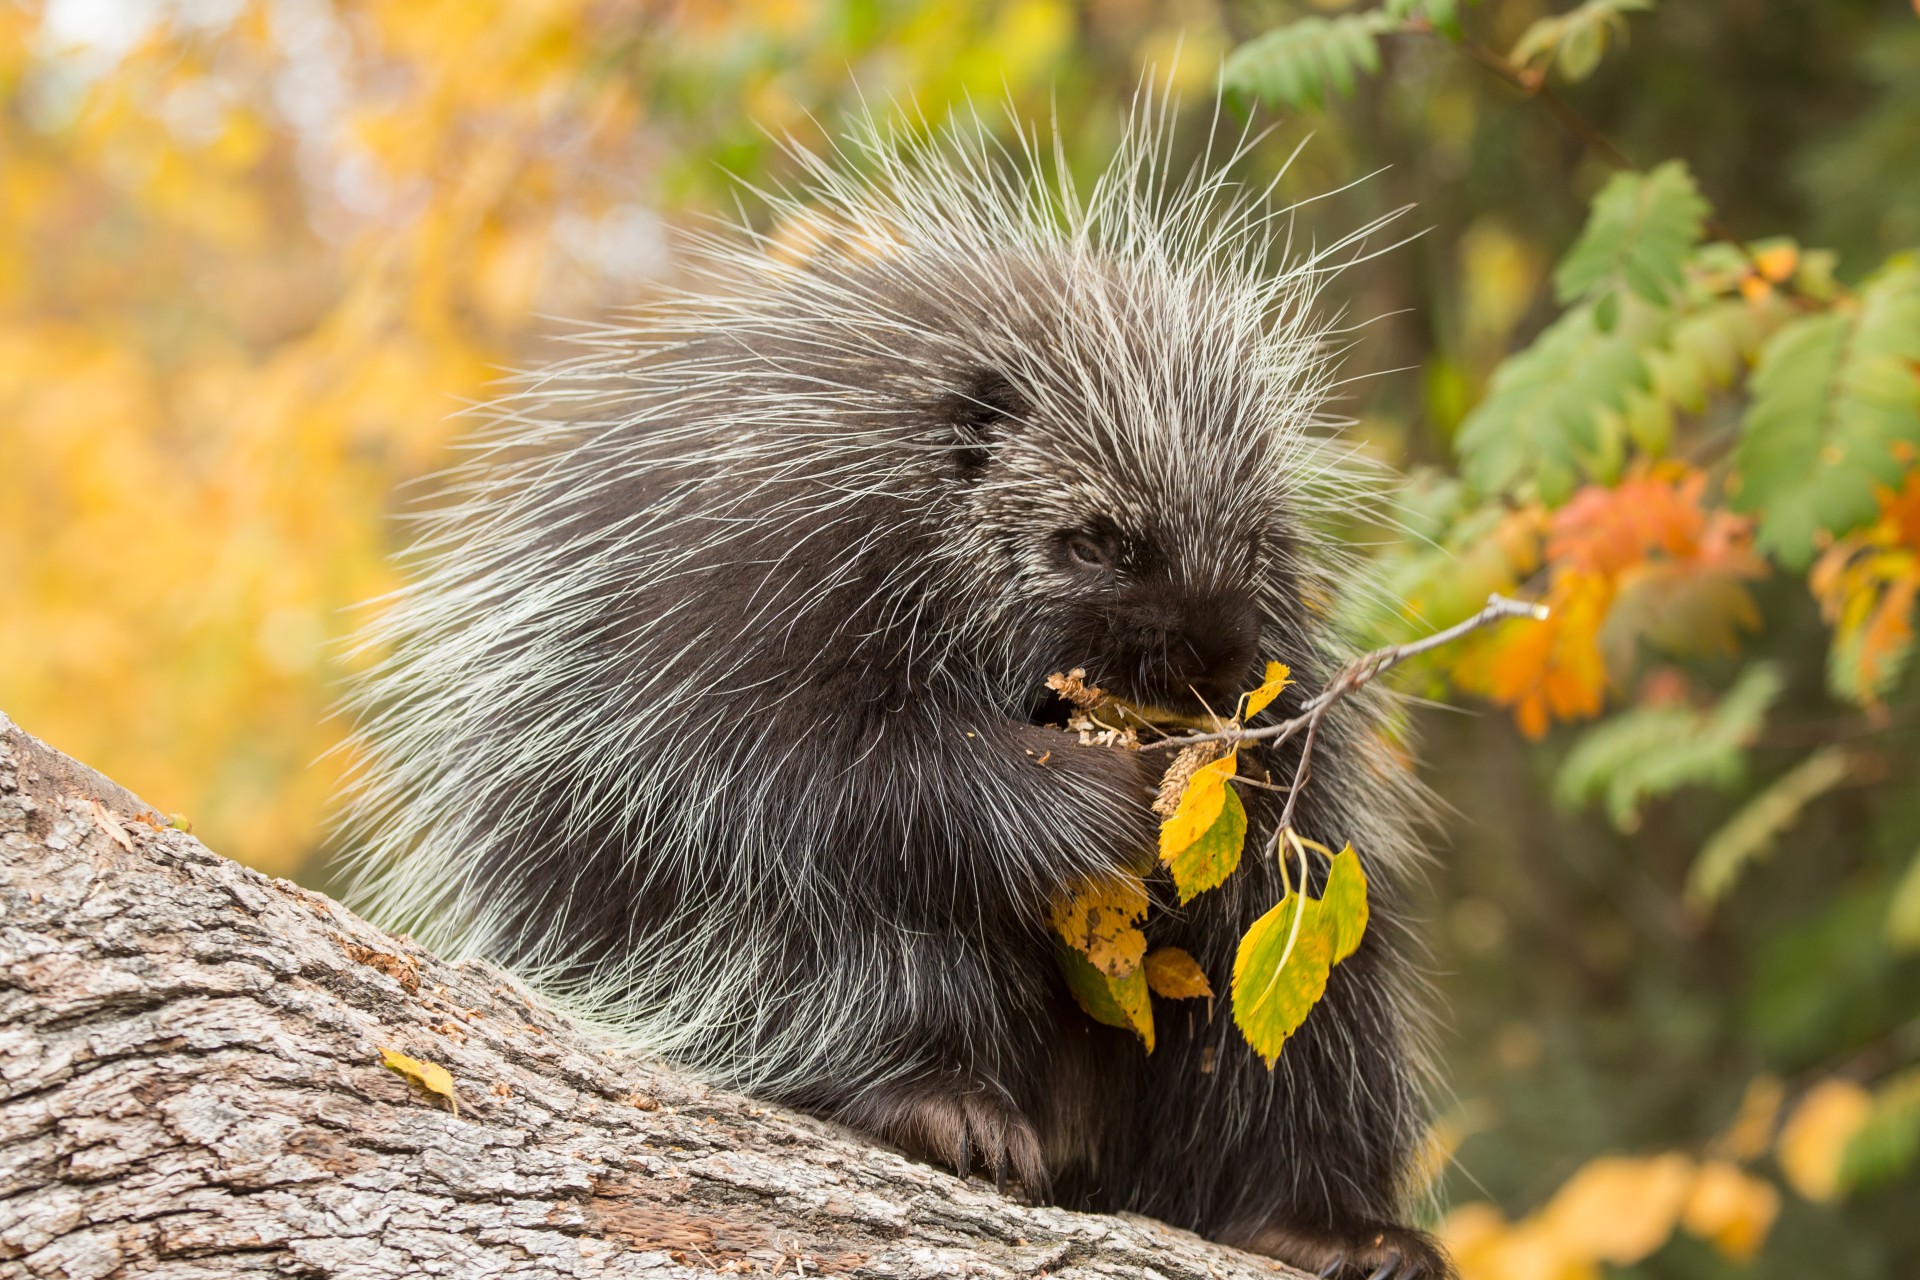 porcupine on tree